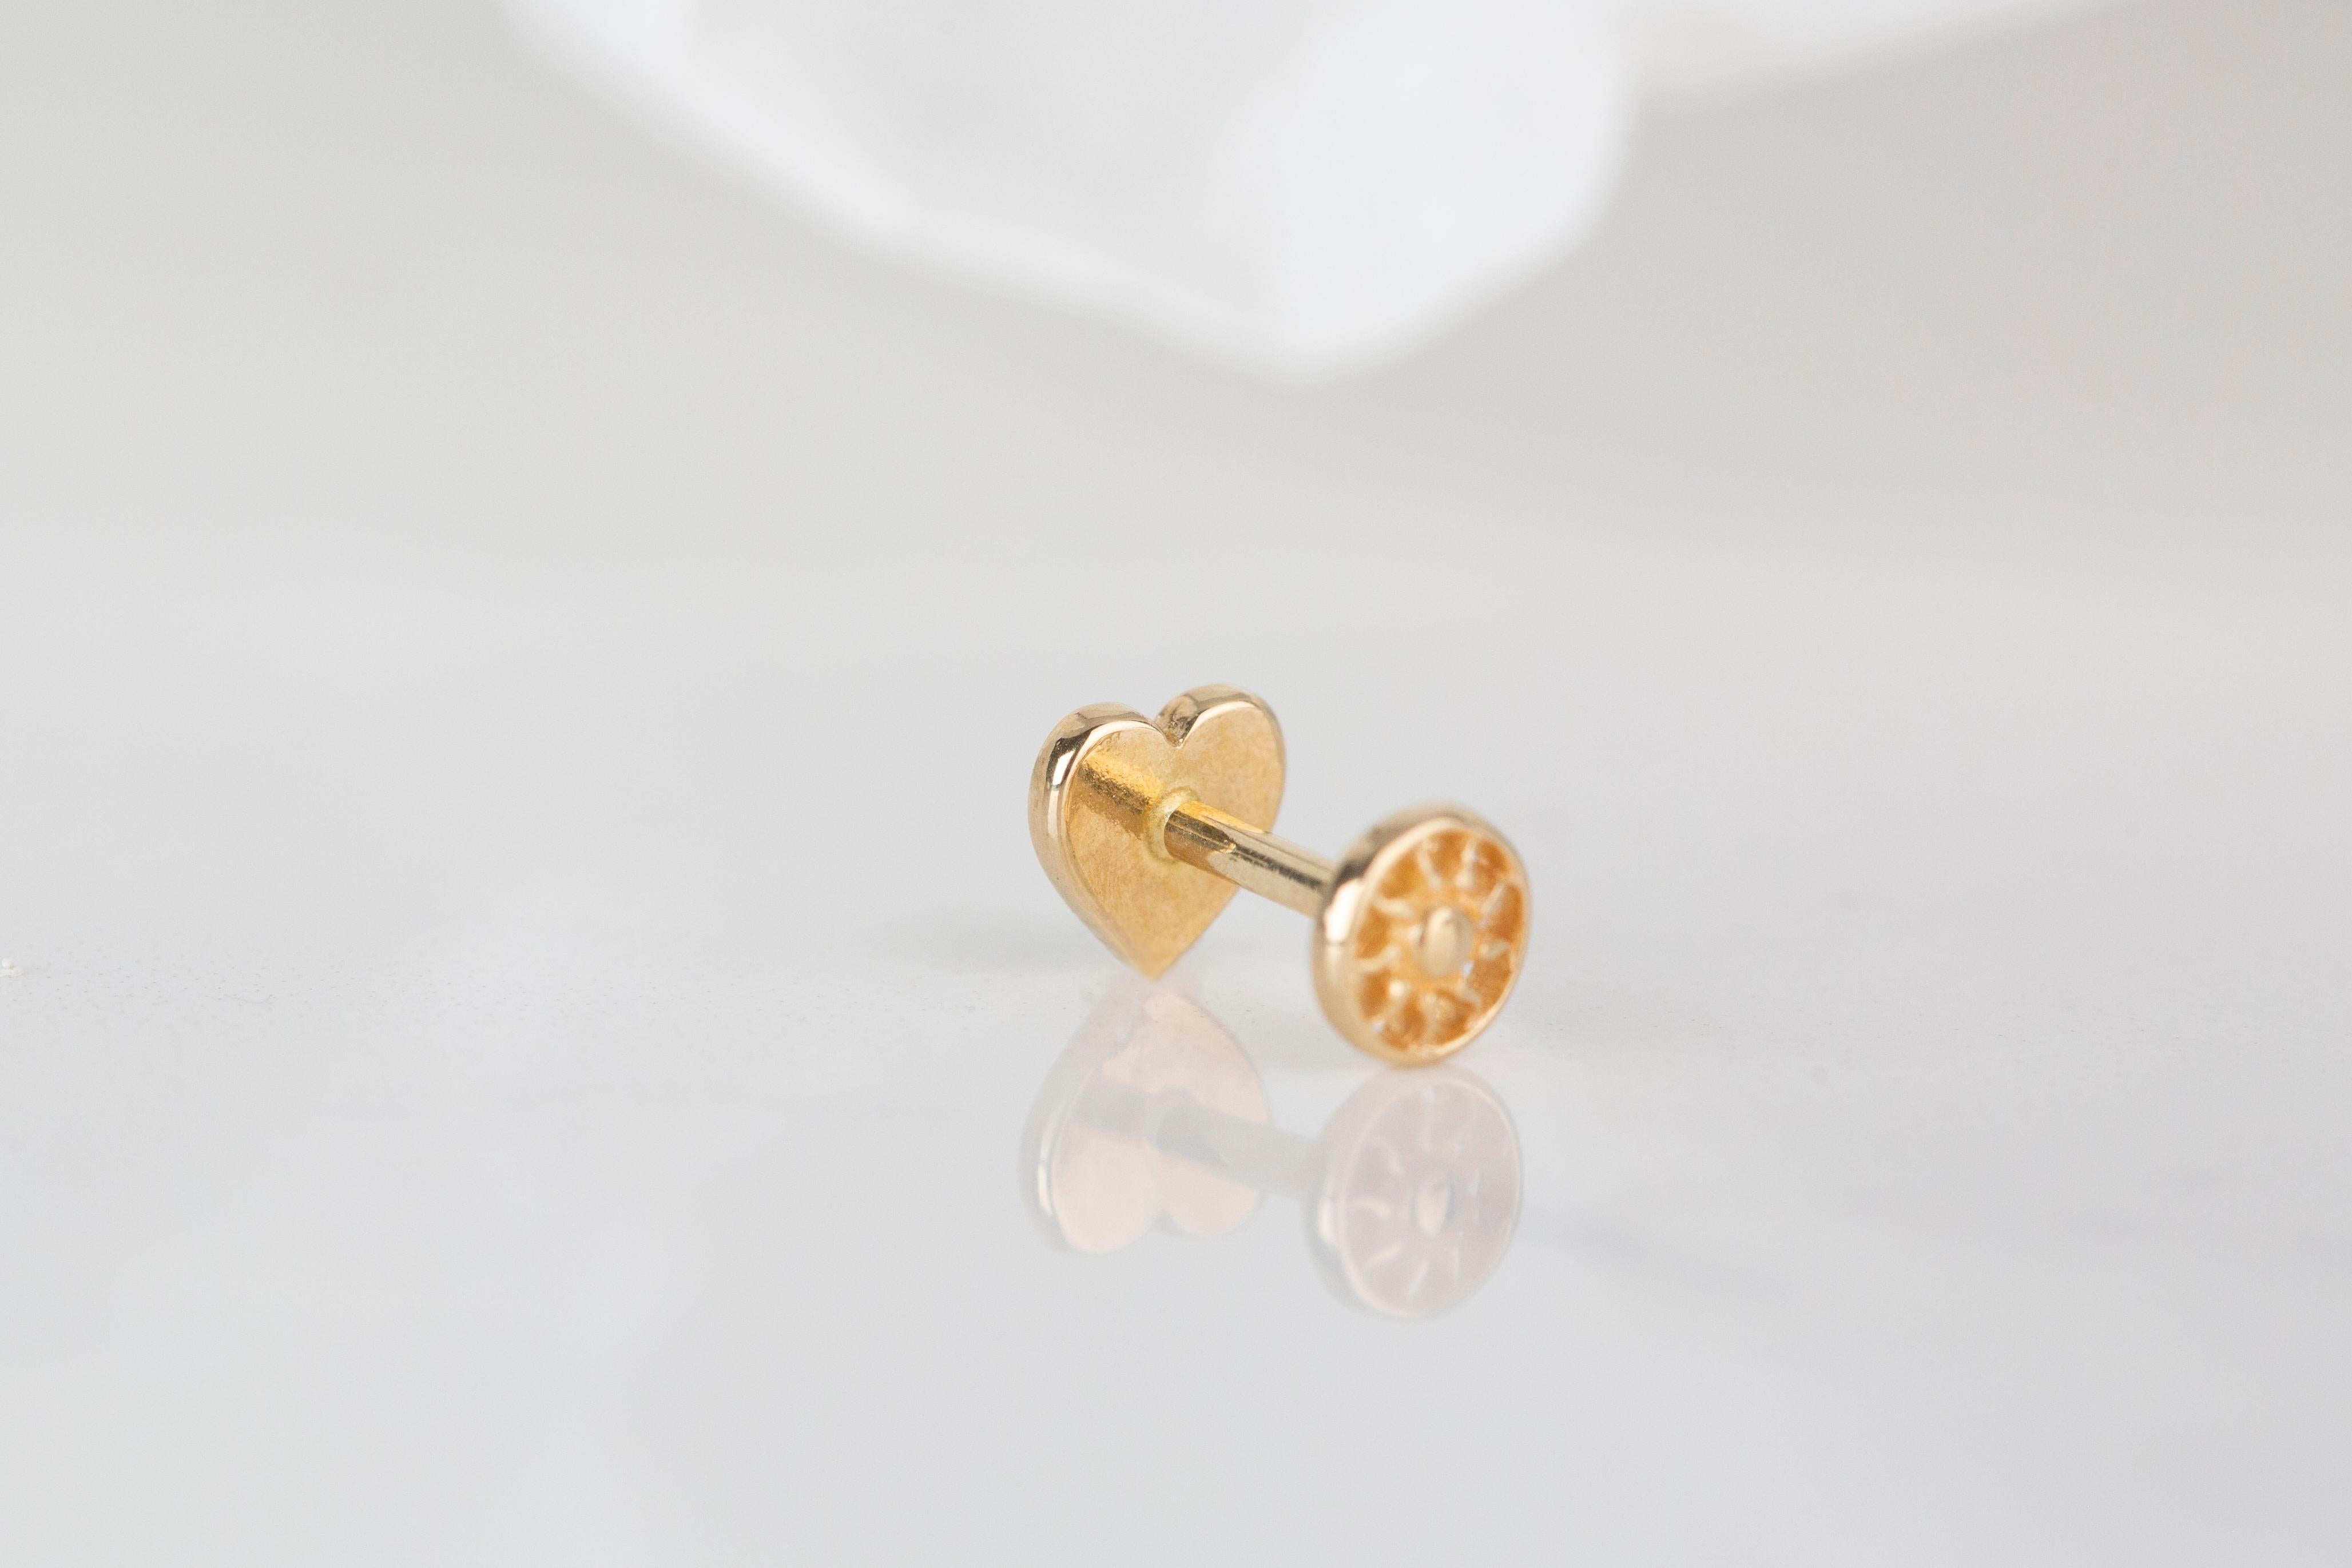 14K Gold Heart Piercing, Heart Shape Gold Stud Earring For Sale 1